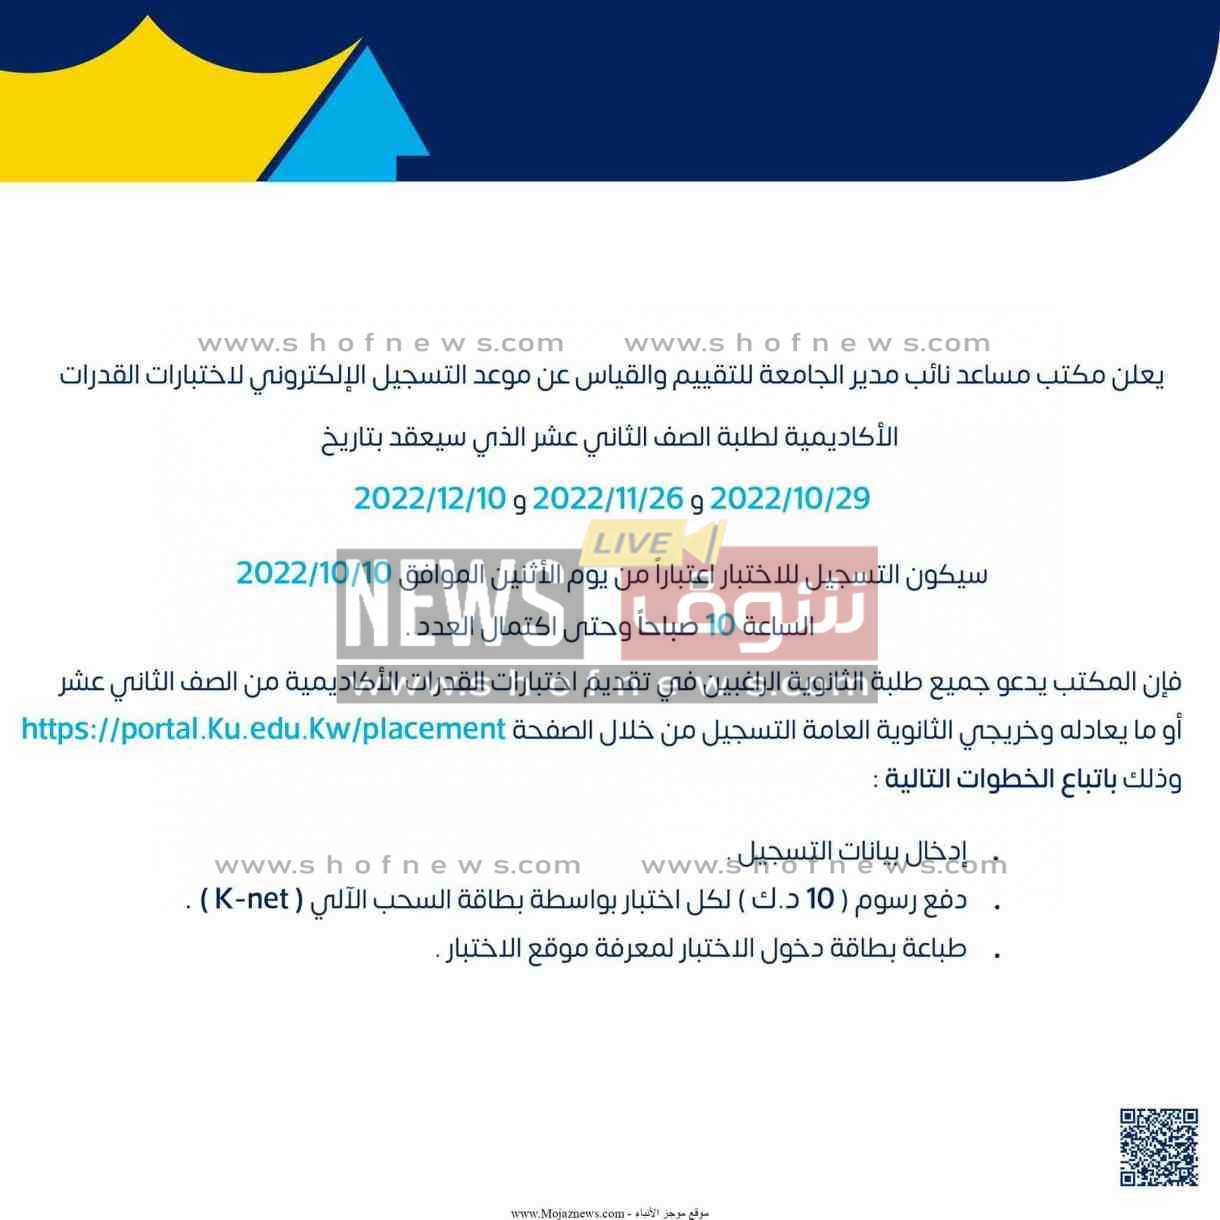 اجراءات اختبارات القدرات جامعة الكويت 2022